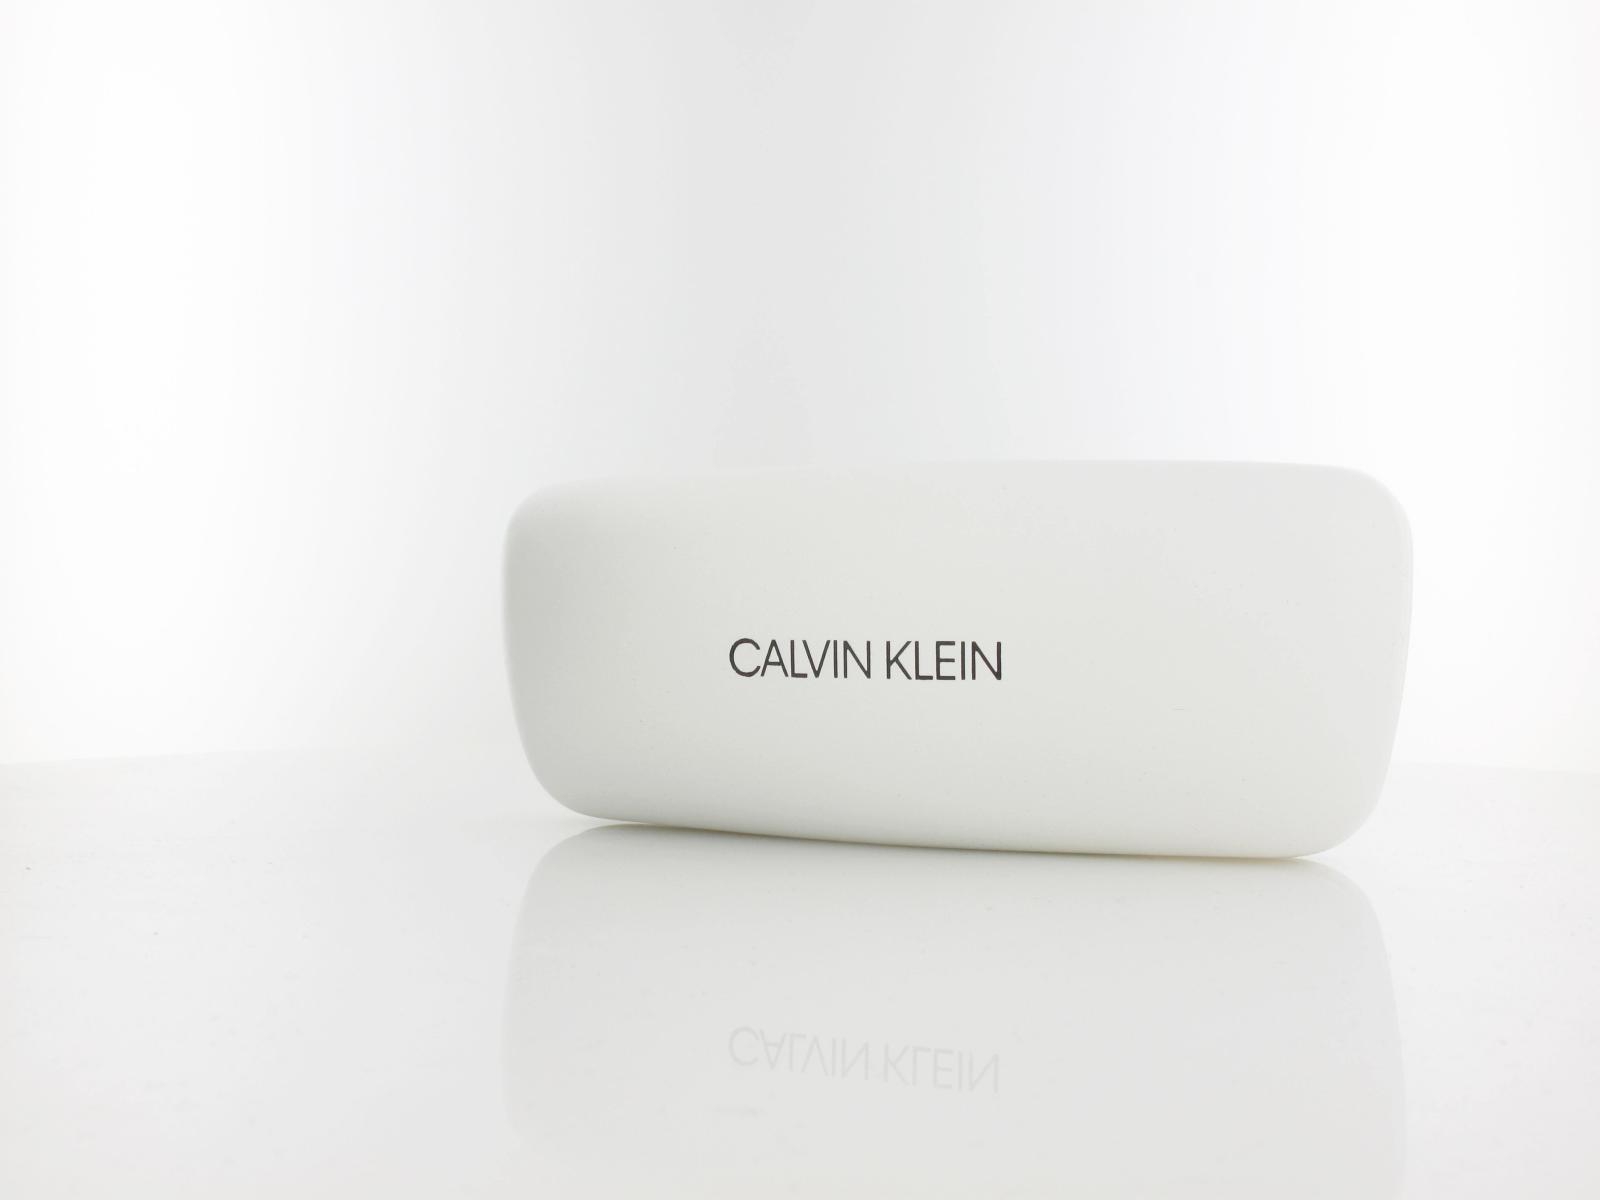 Calvin Klein | CK20507 685 52 | pink tortoise blush